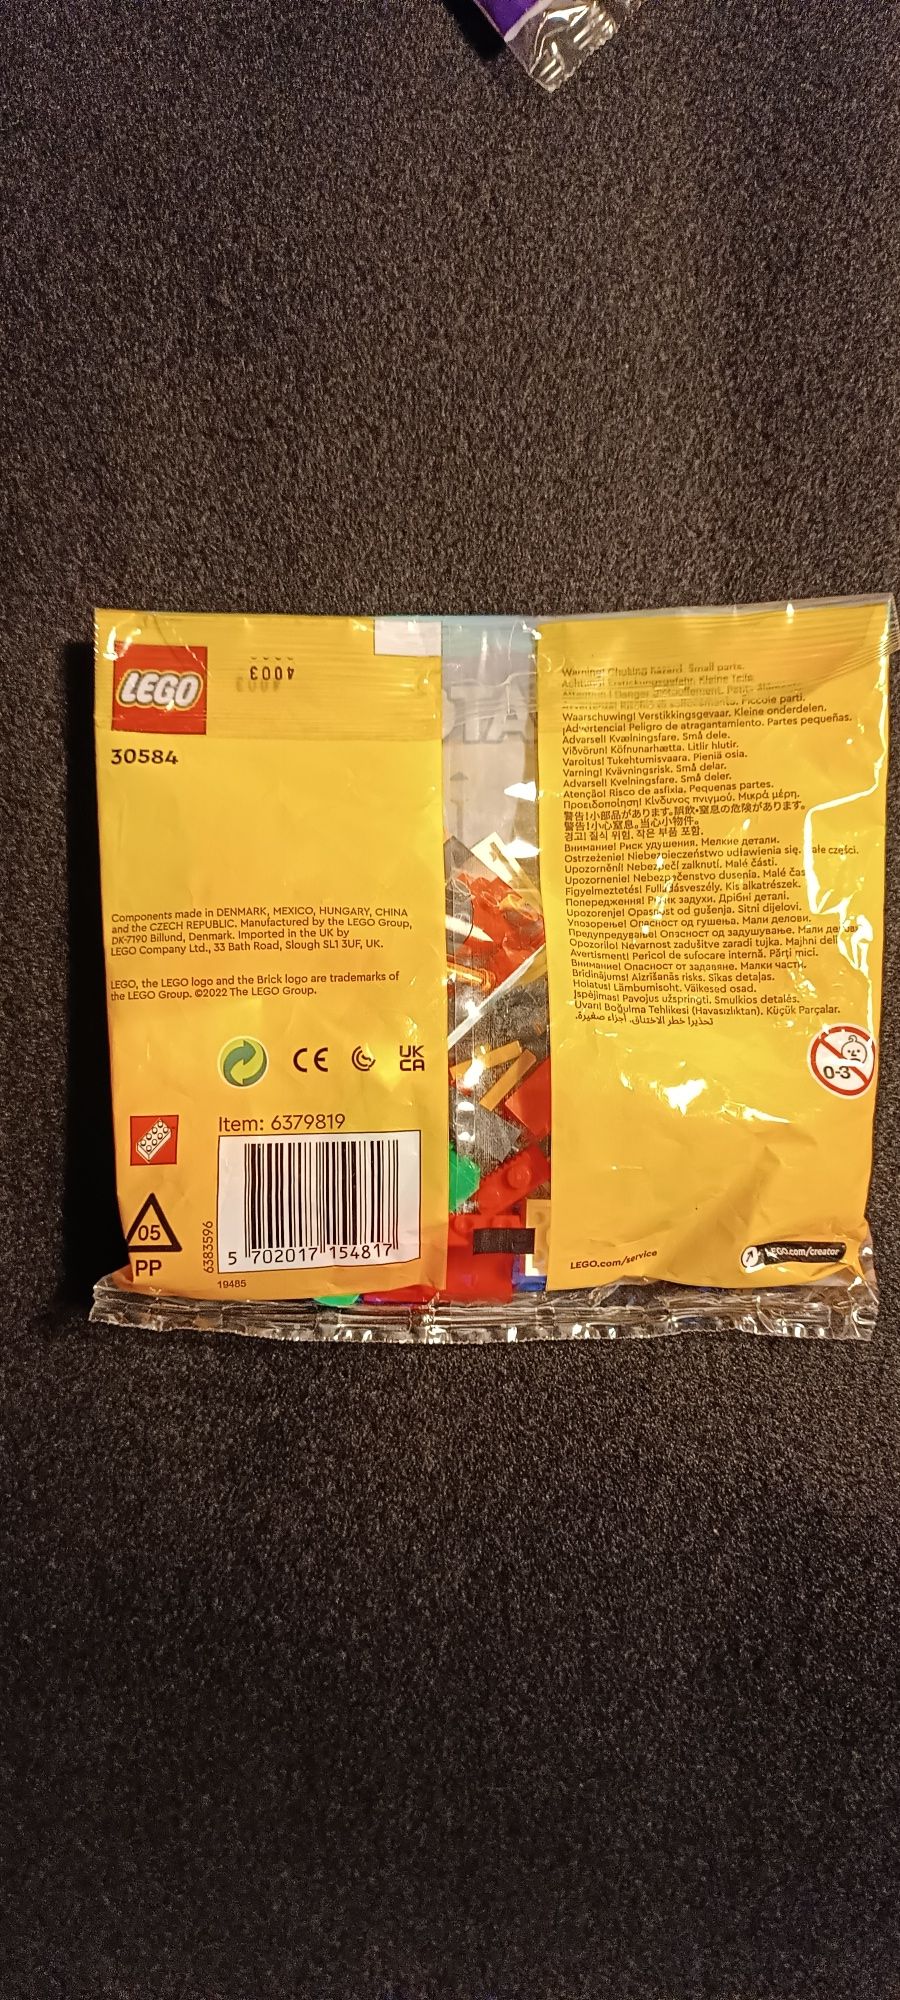 LEGO polybag saszetka Creator 30584.